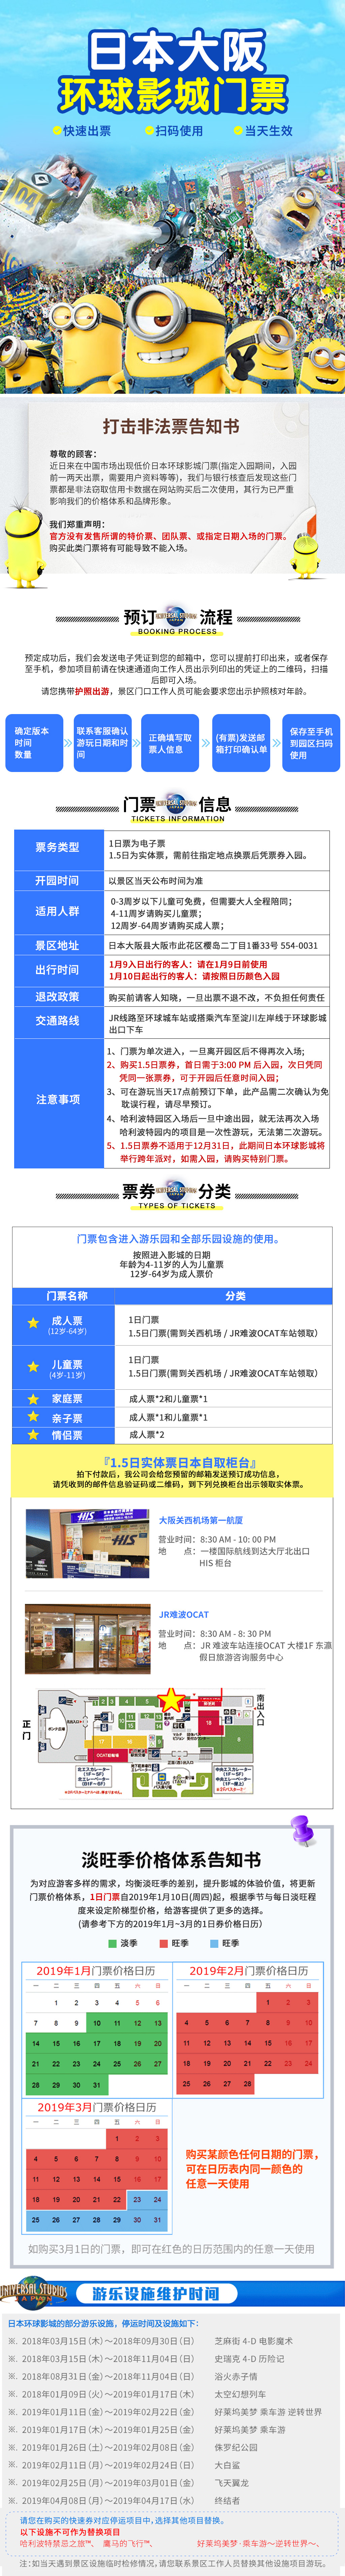 北京环球影城开业时间门票_如何购买北京环球影城门票_好莱坞环球影城门票